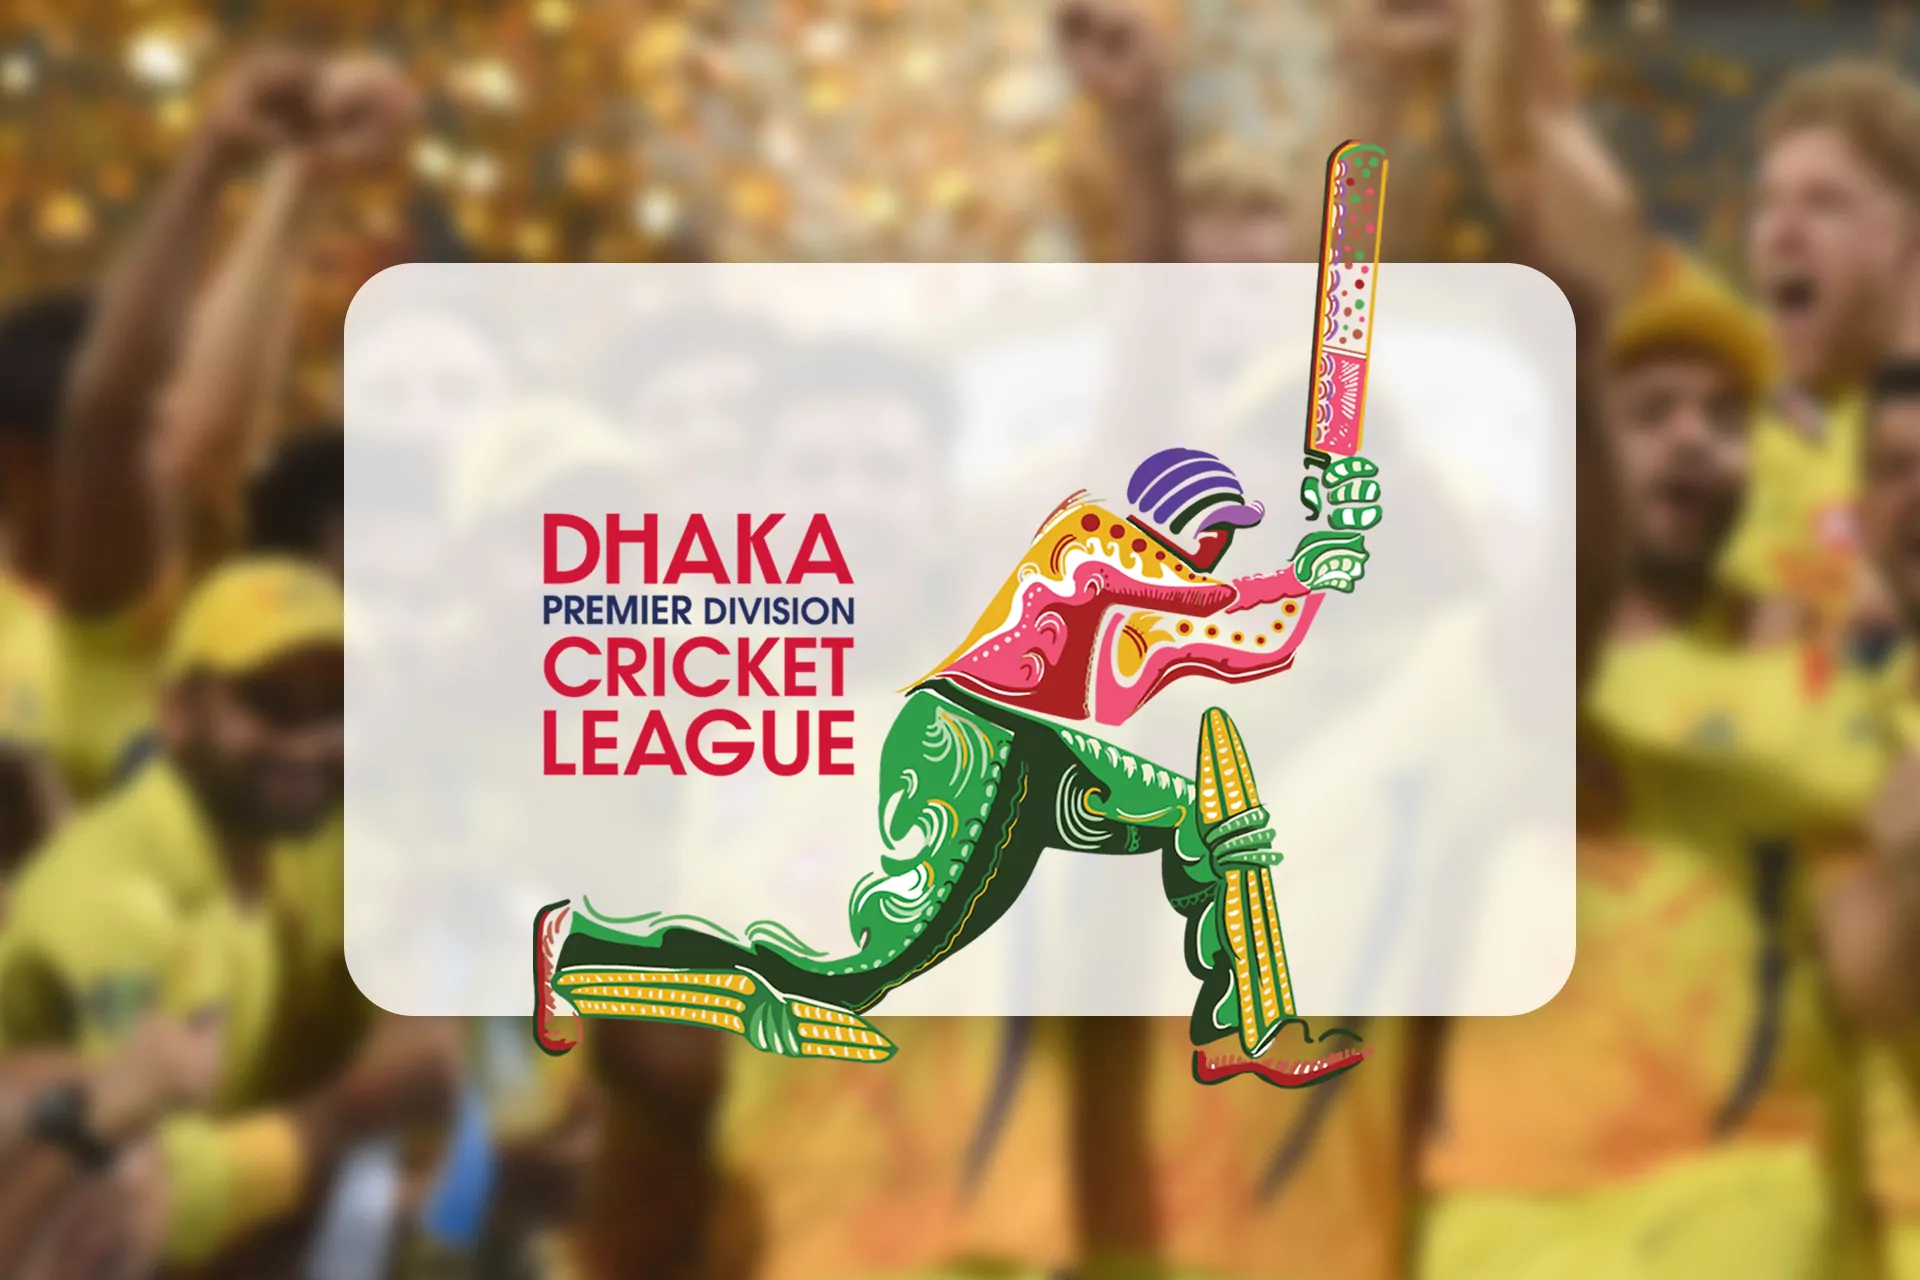 সাধারণত 12 টি দল রয়েছে যা Dhaka াকা প্রিমিয়ার ক্রিকেট লিগে অংশ নেয়।